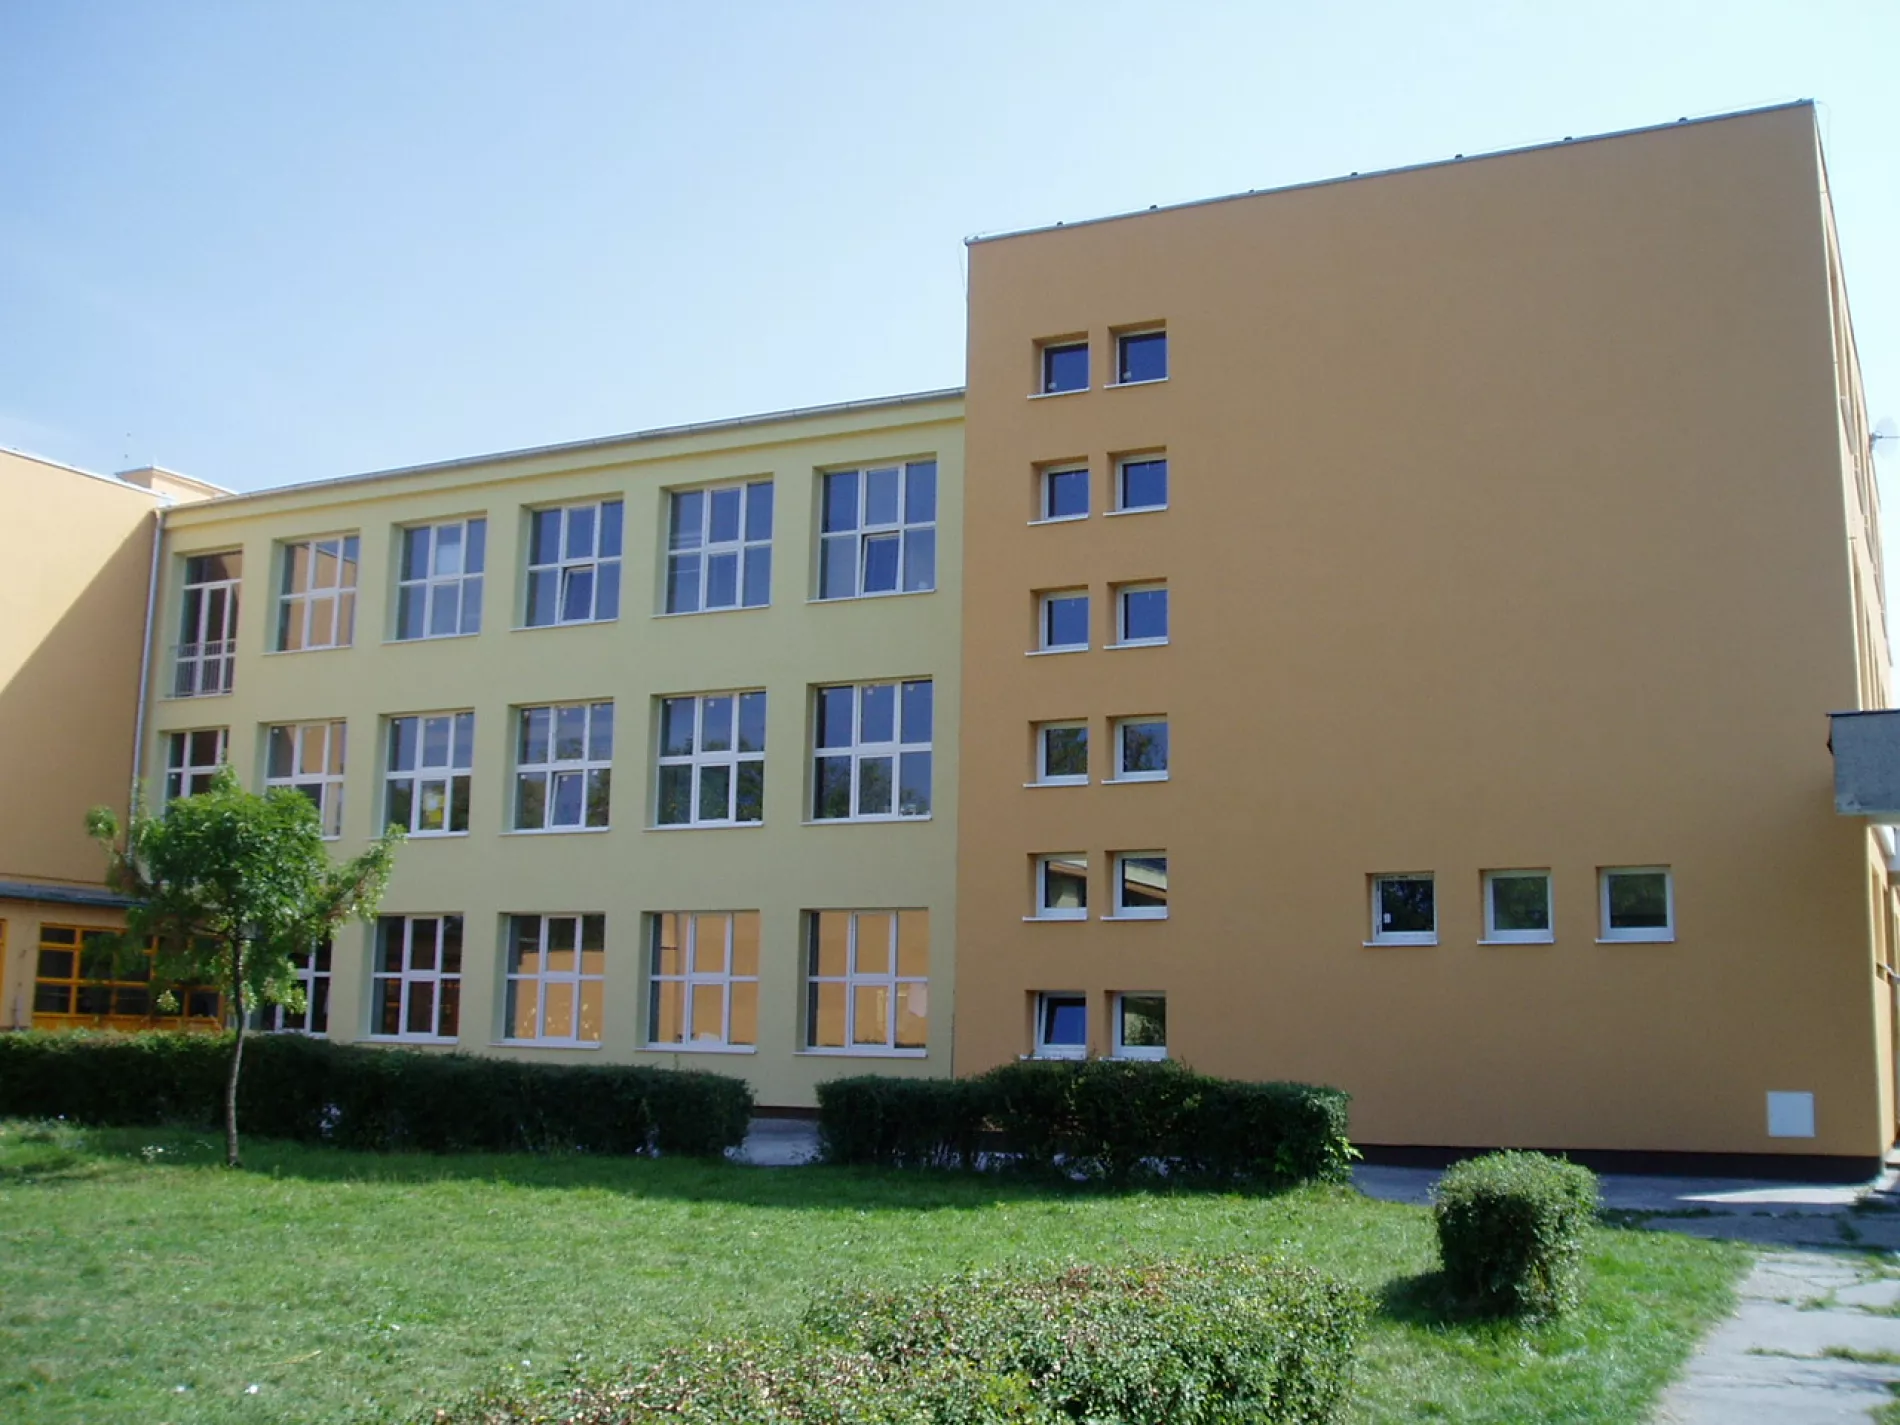 Školy vo Vajnoroch zostavajú zatvorené